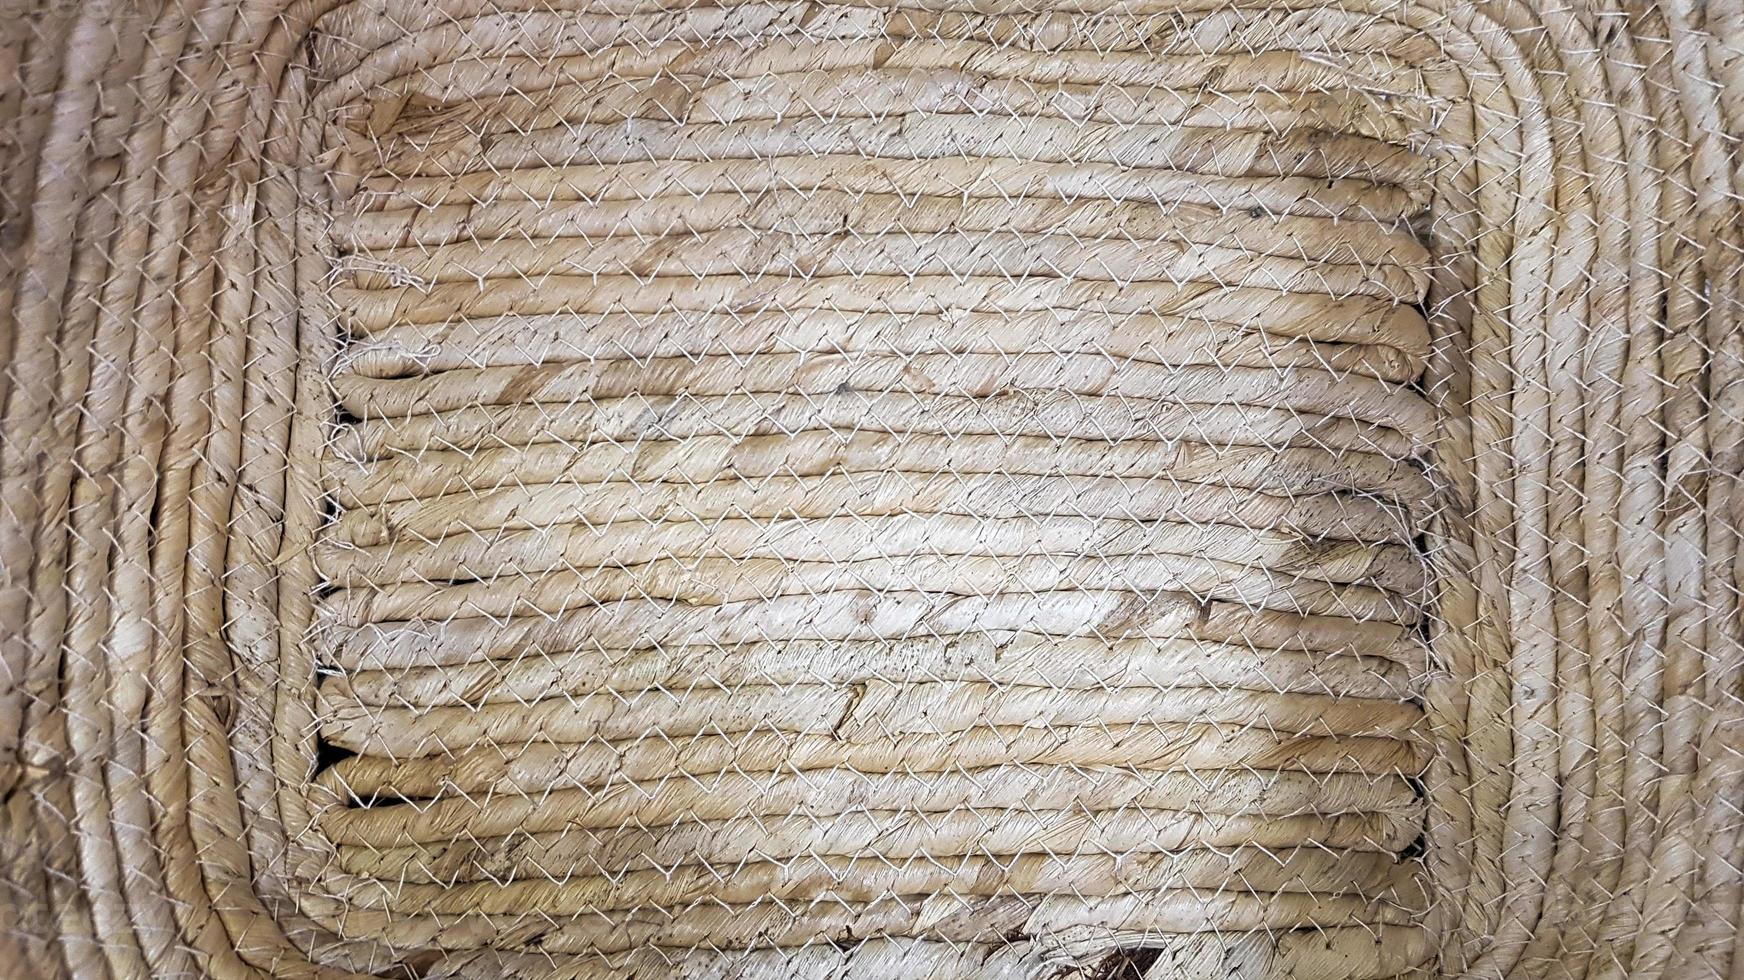 fragmento de cesta de mimbre. cierre la textura de la cesta de mimbre para usarla como fondo. patrón y textura de cesta tejida. foto